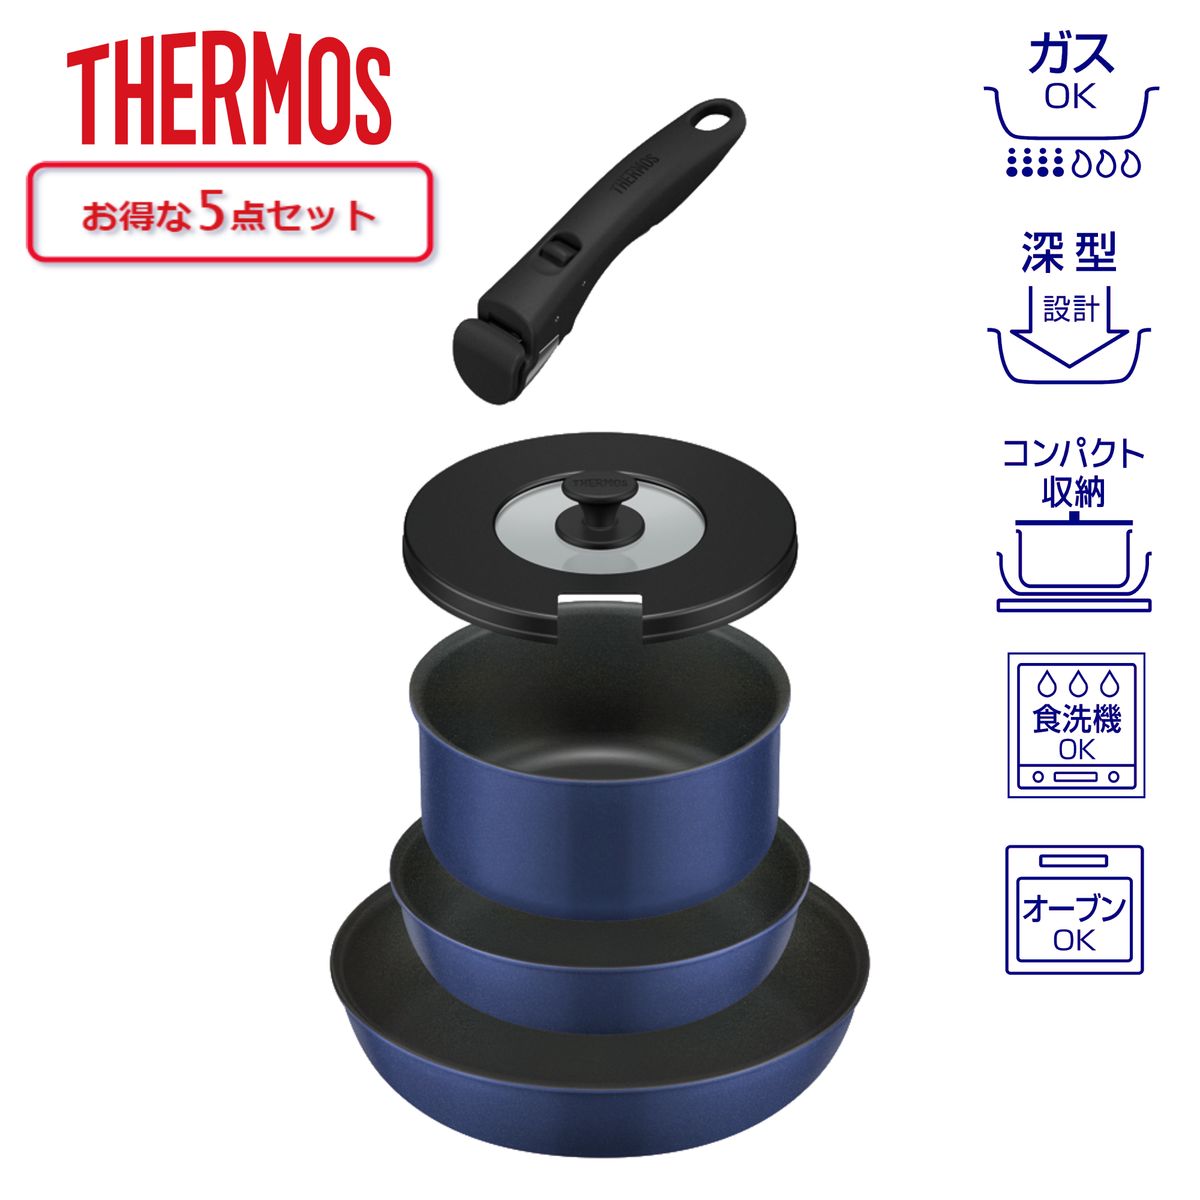 THERMOS 取っ手のとれるフライパン5点セット 蓋付 着脱式取っ手 インディゴブルー ガス火専用 食洗器対応